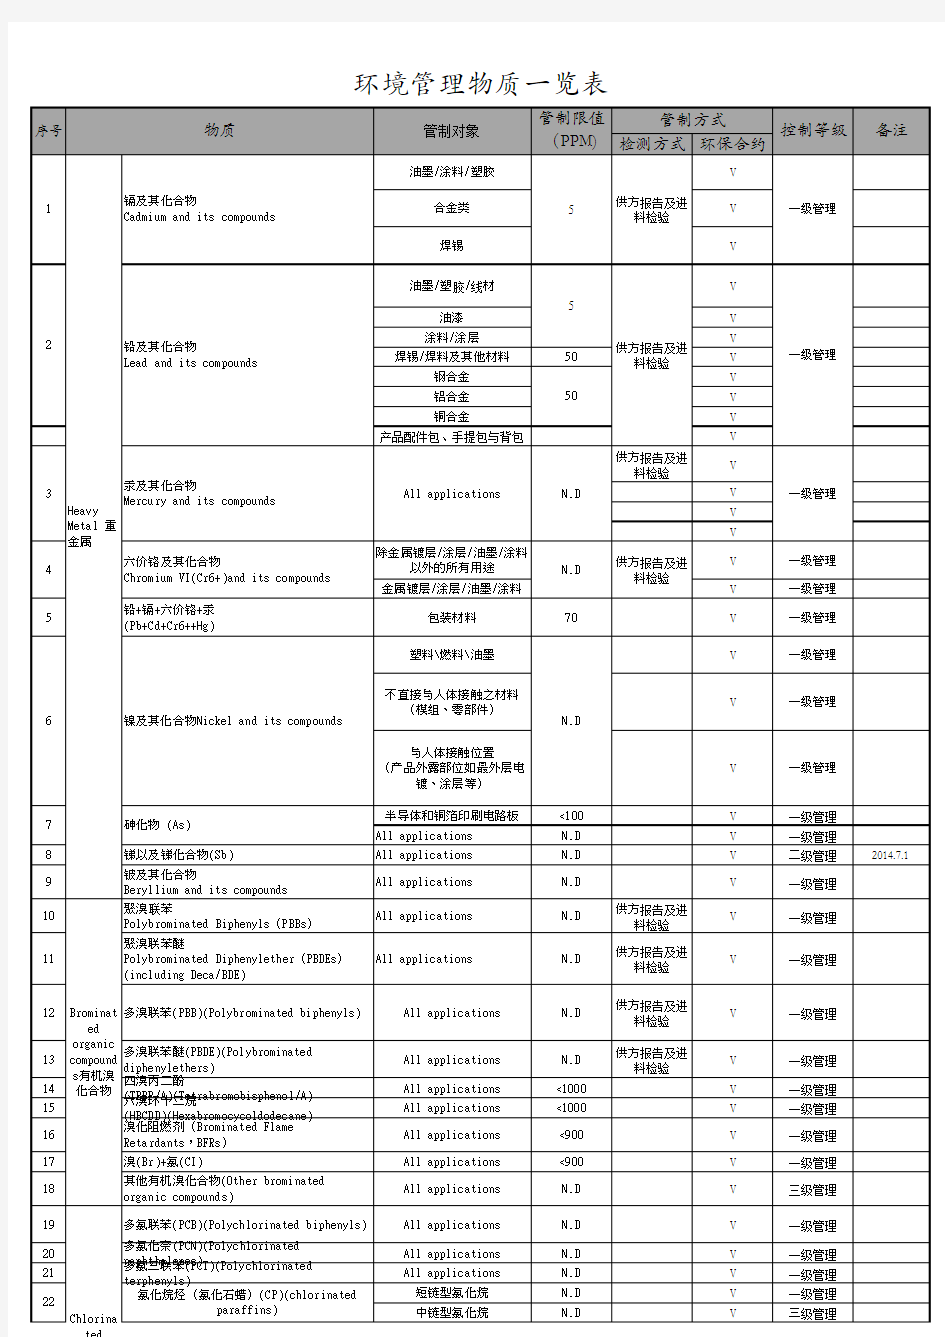 环境管理物质一览表(二阶文件品保部)